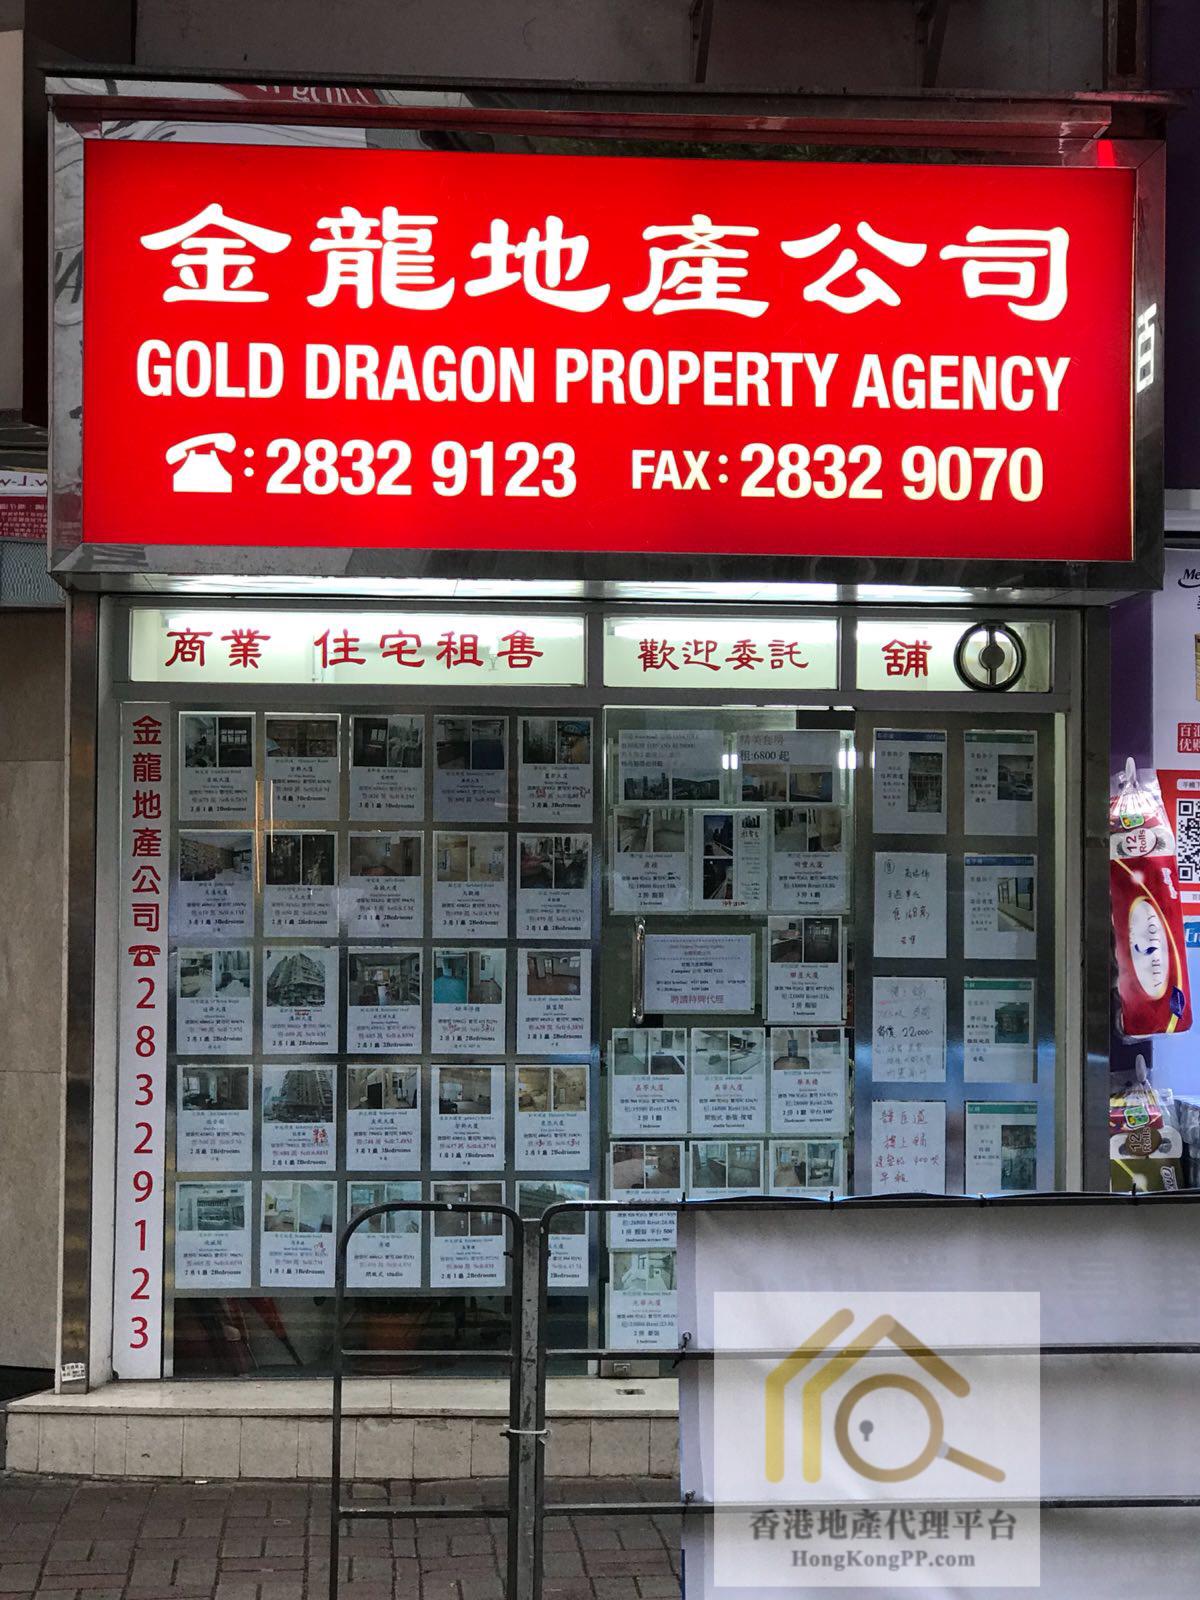 地產代理公司 Estate Agent: 金龍地產公司